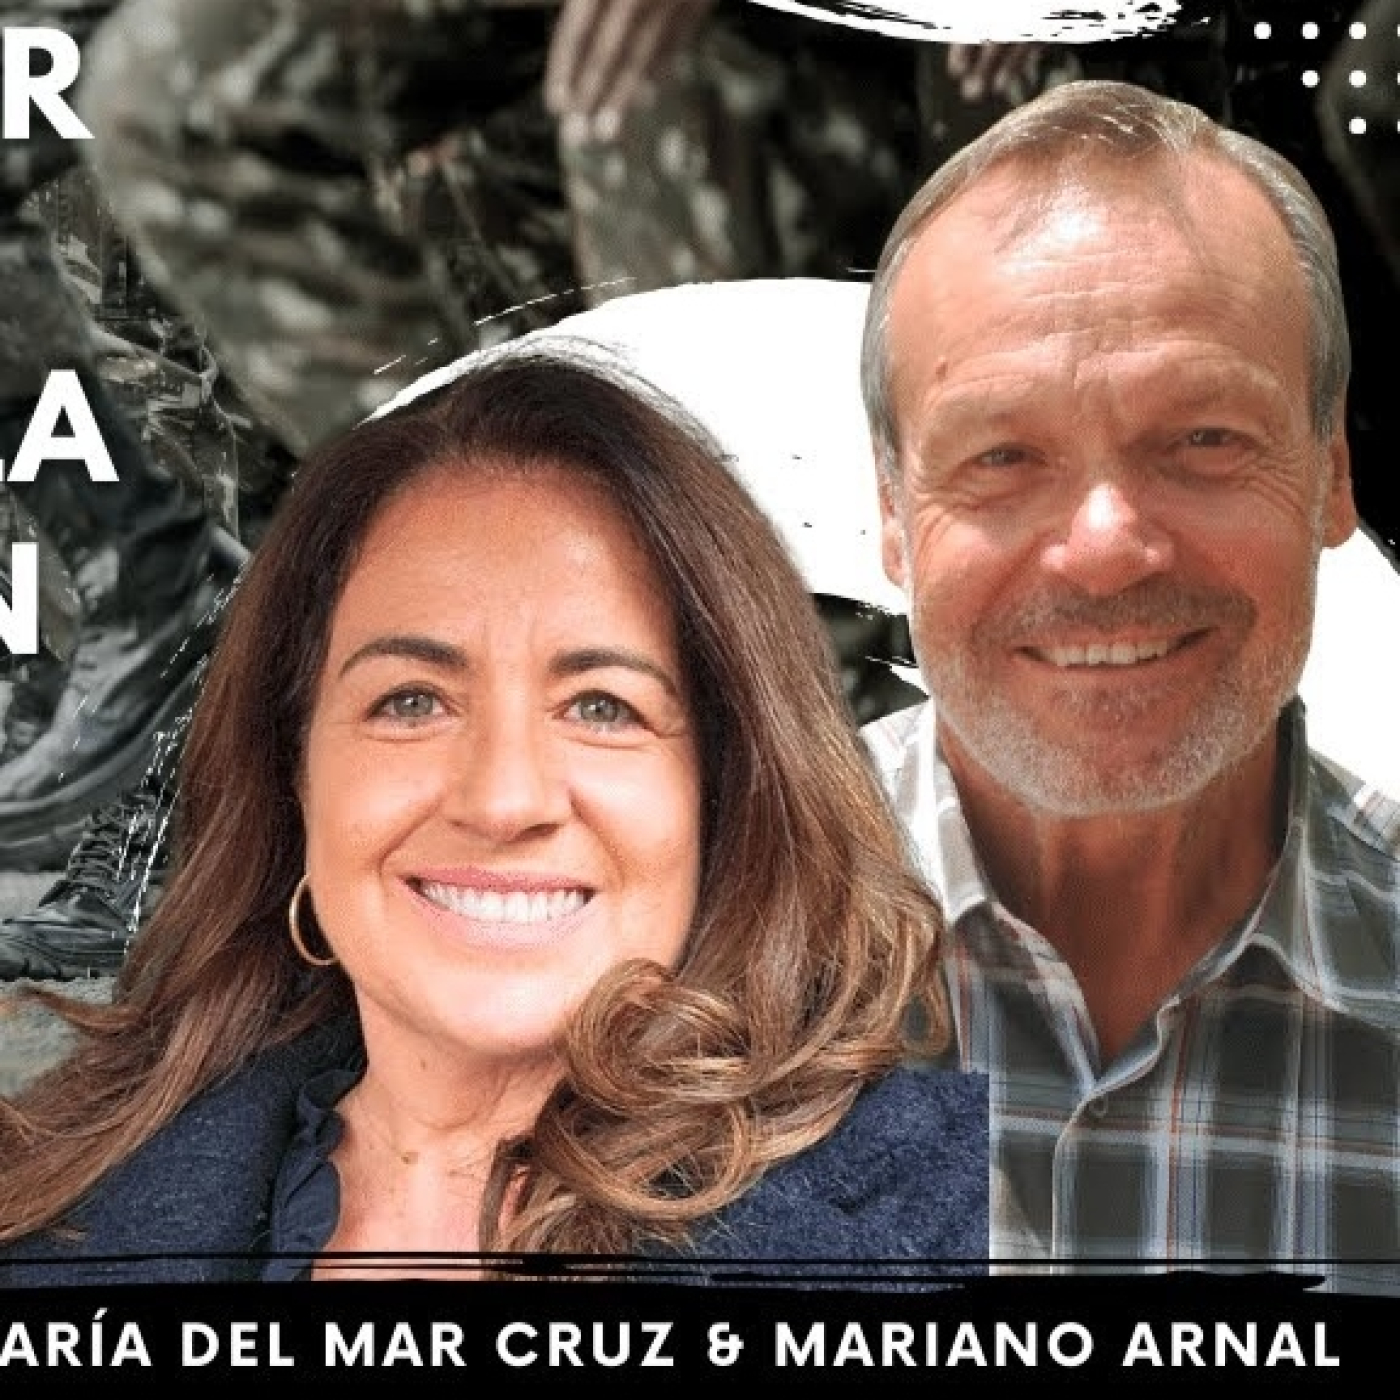 SERVICIO MILITAR OBLIGATORIO AL SERVICIO DE LA MILITARIZACIÓN con Mariano Arnal & María del Mar Cruz